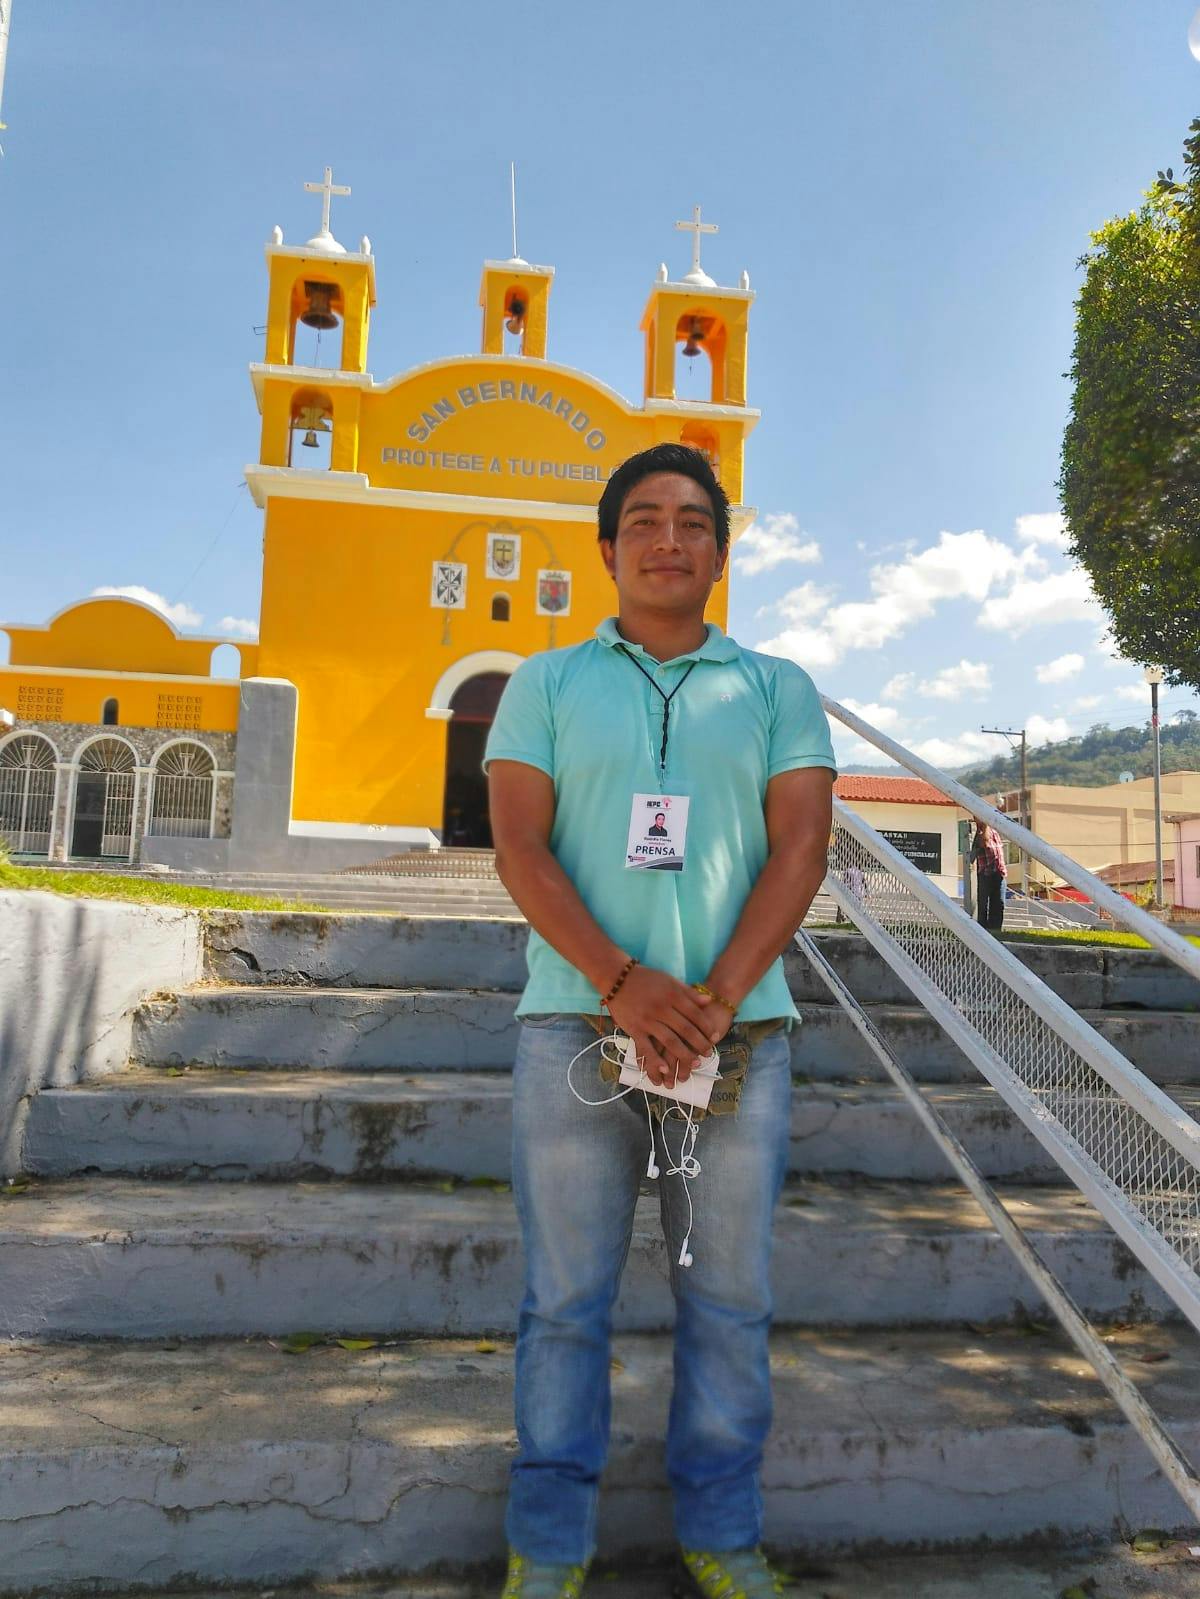 periodista Rodolfo flores con una libreta en mano en San Cristobal de Las Casas.